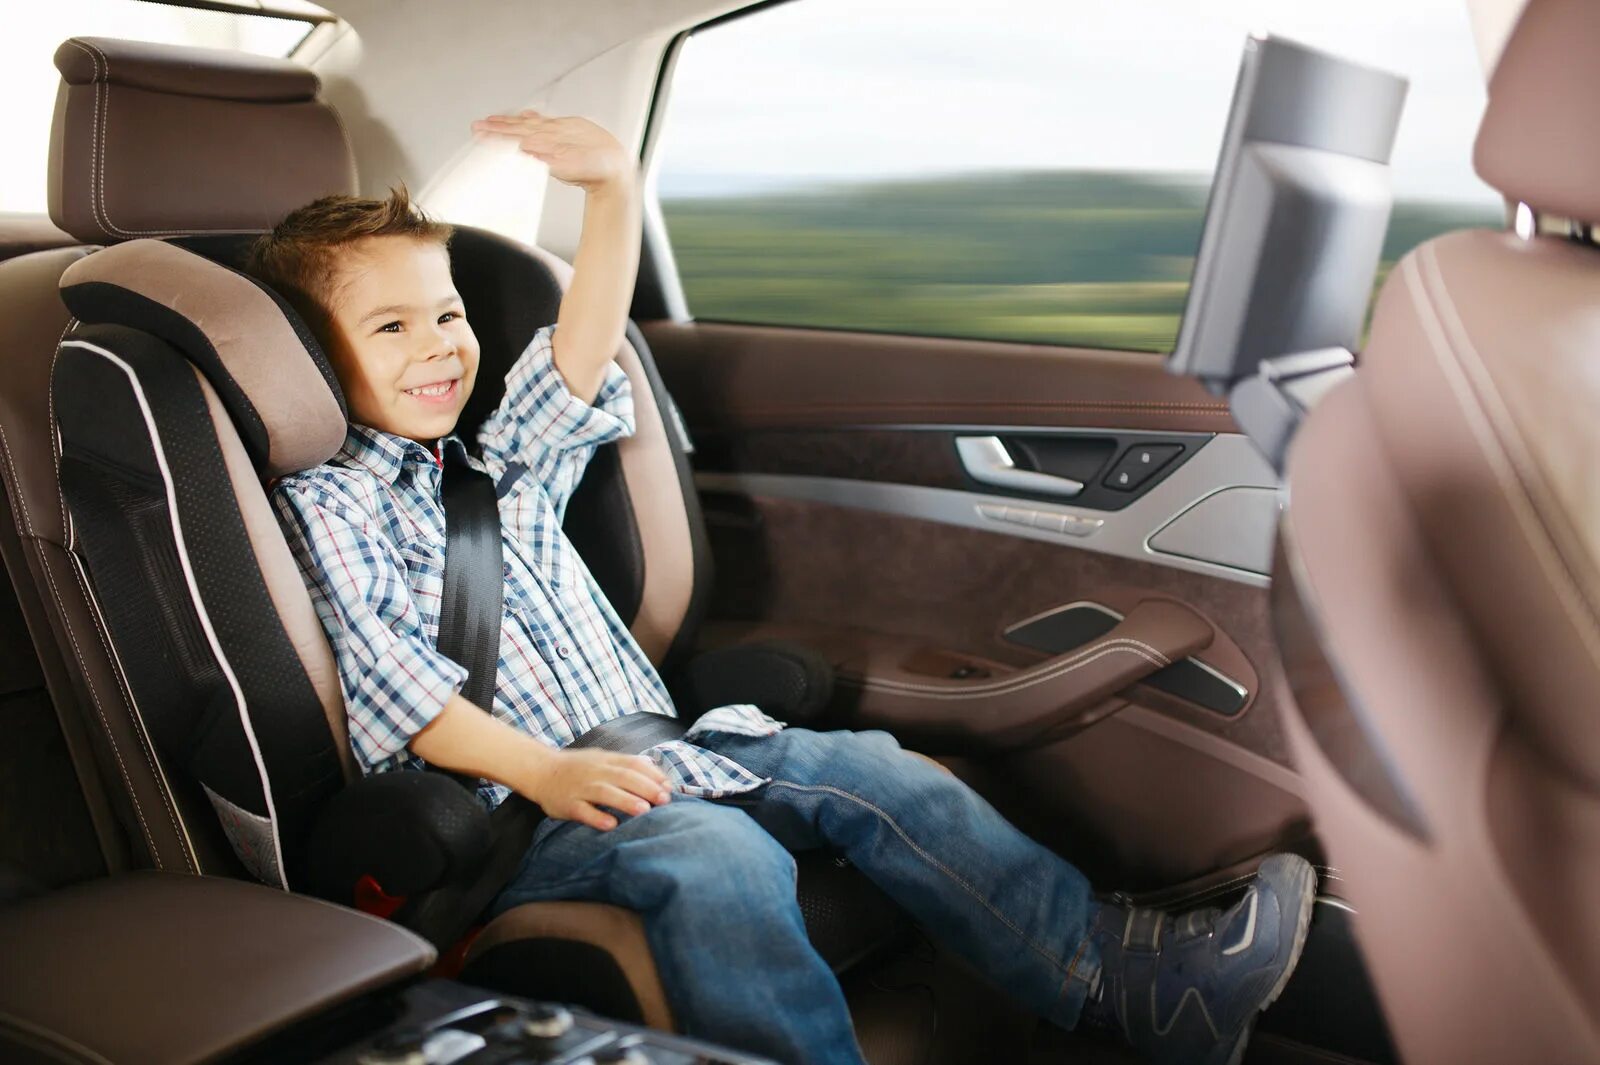 Безопасность в машине на заднем сиденье. Детские кресла на заднем сиденье. Дети на заднем сидении машины. Мальчик в кресле. Автомобиль для детей.